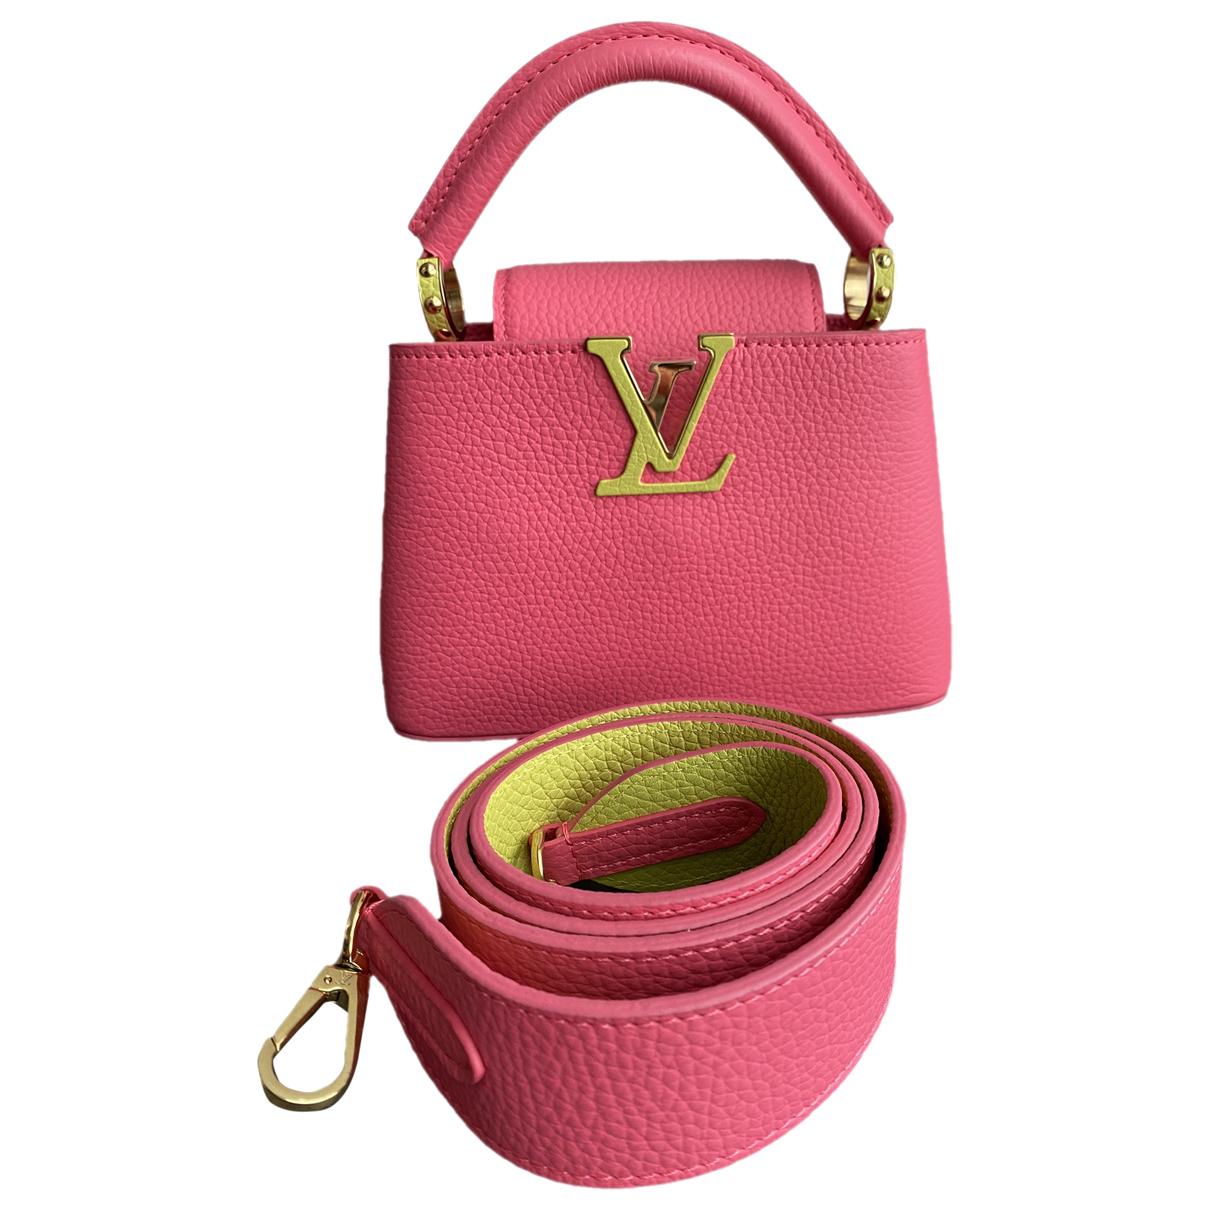 📰 Bolso Capucines Louis Vuitton, un símbolo de excelencia creativa